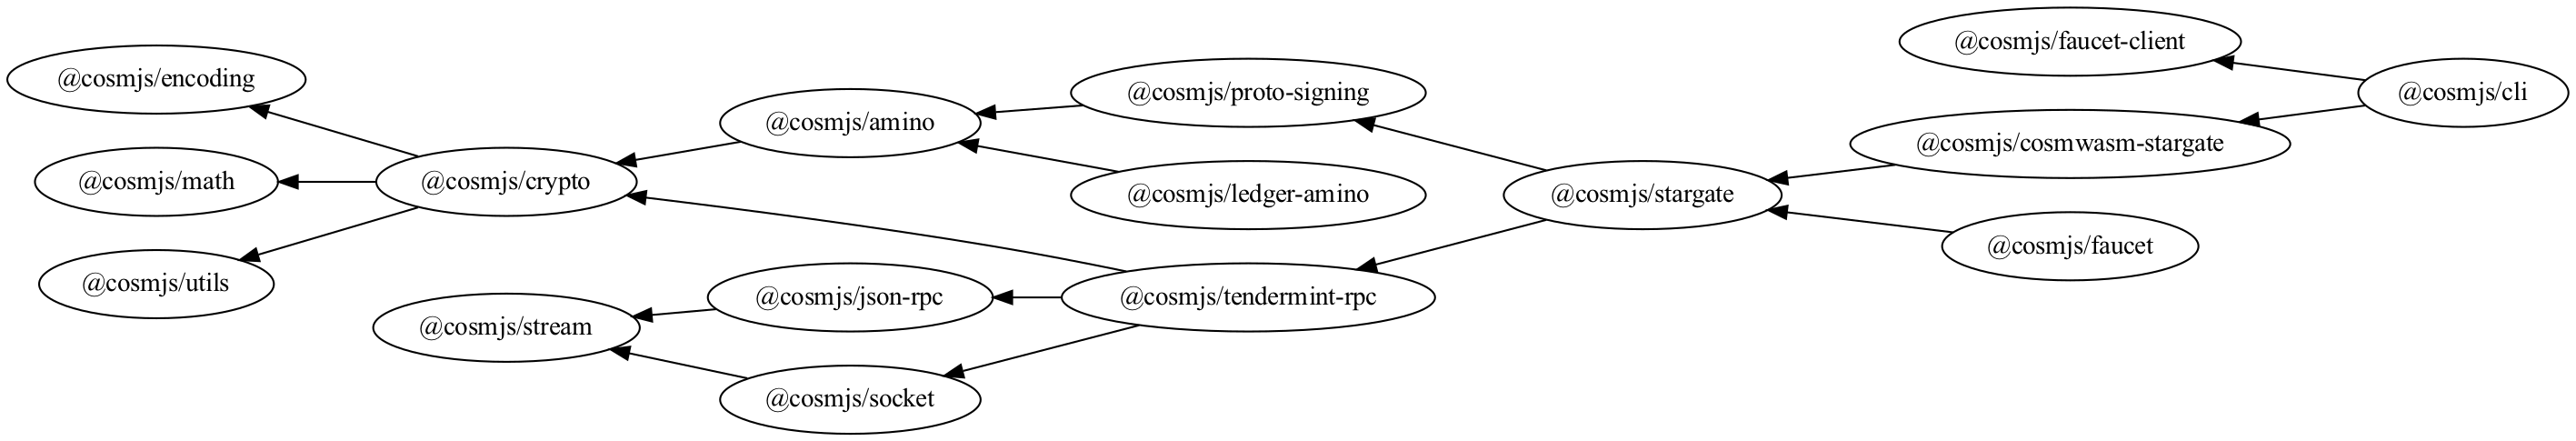 CosmJS dependency graph